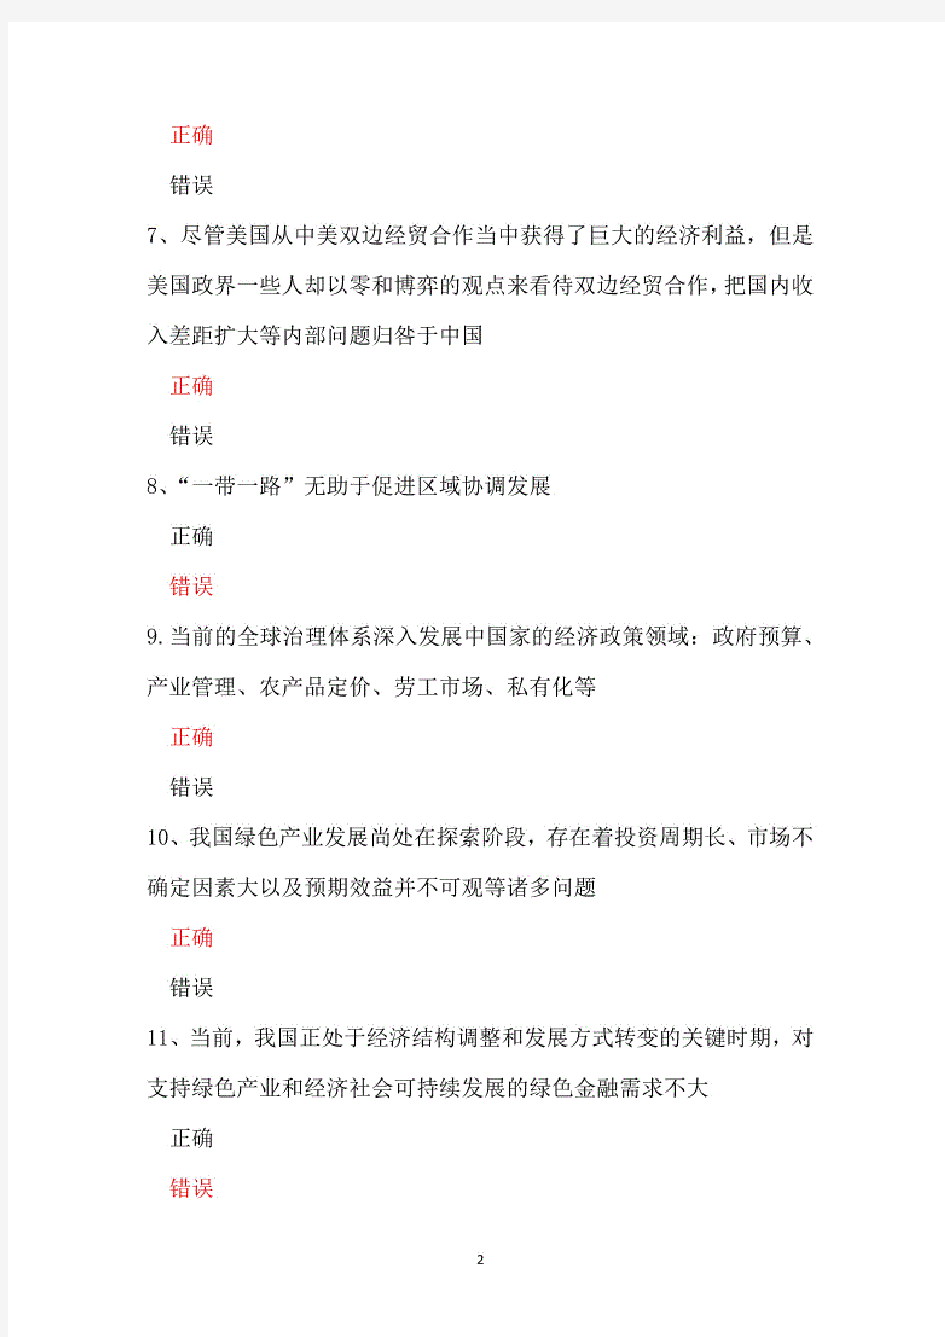 【继续教育】2020年徐州市专业技术人员继续教育公共科目《一带一路》考试题库(24套附知识点)